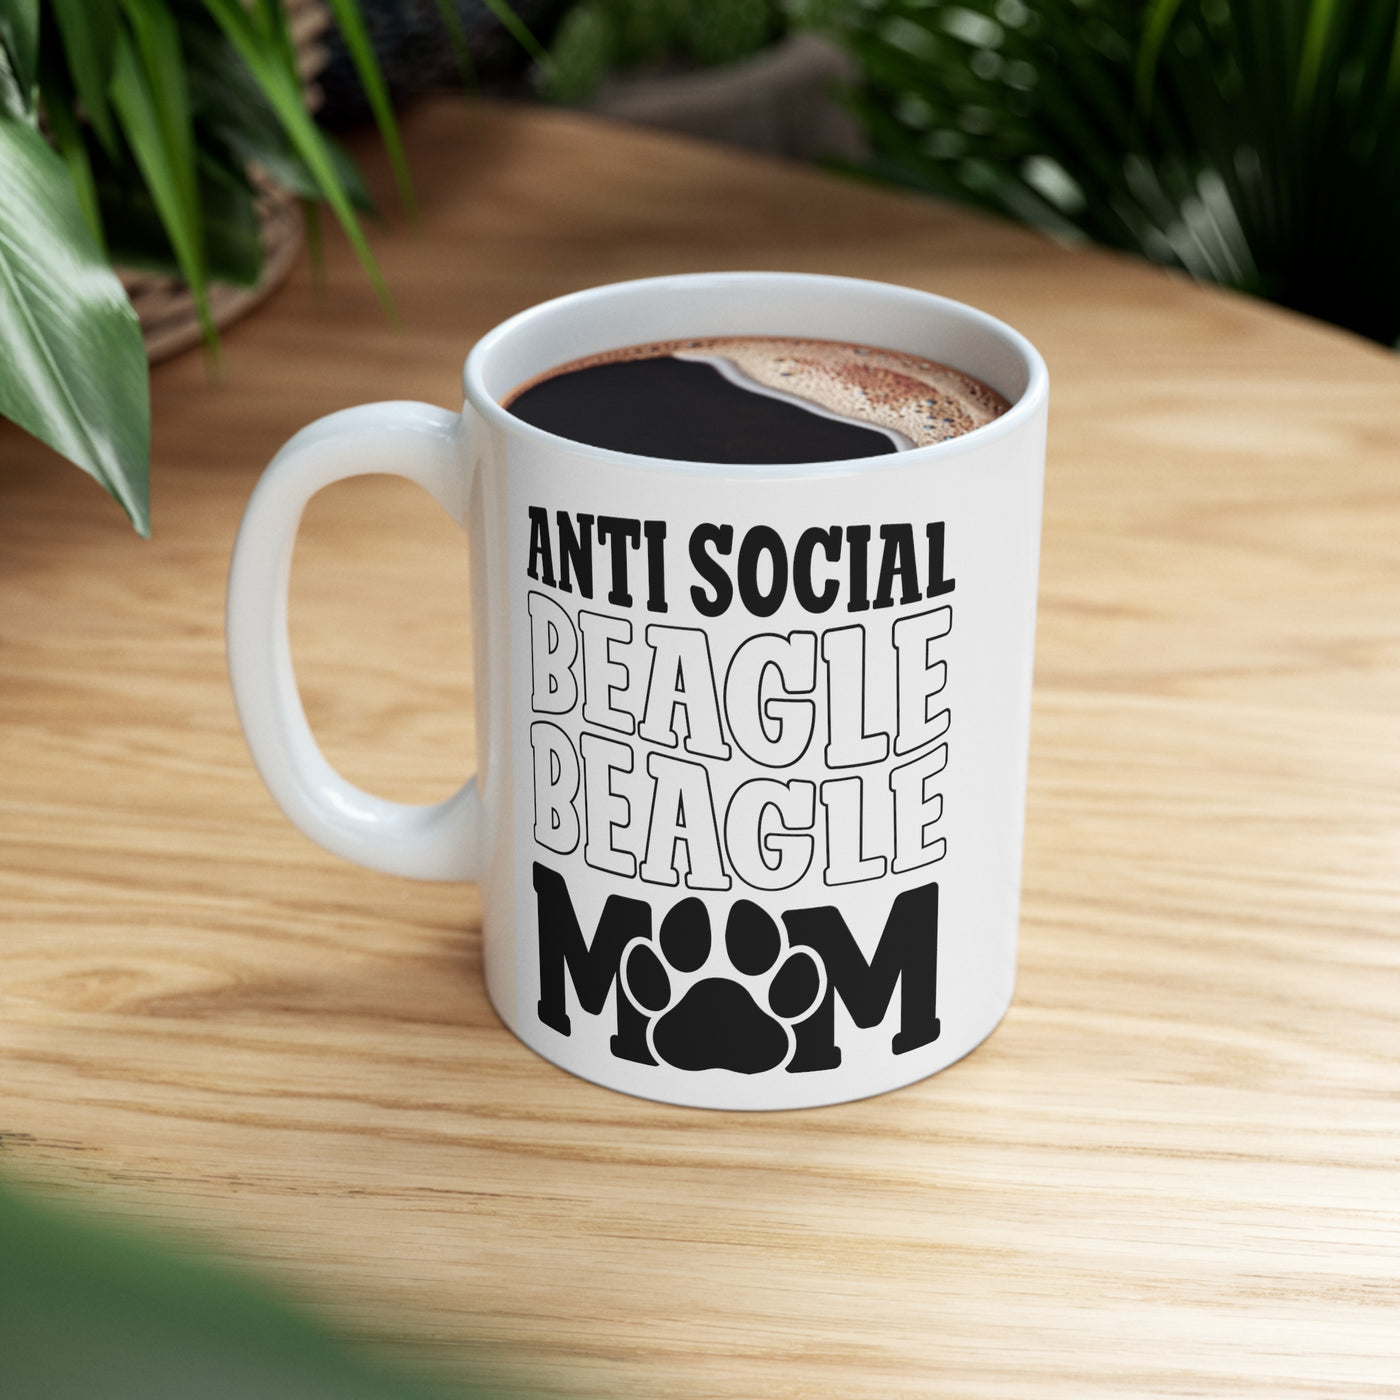 Antisocial Beagle Mom Ceramic Mug 11oz